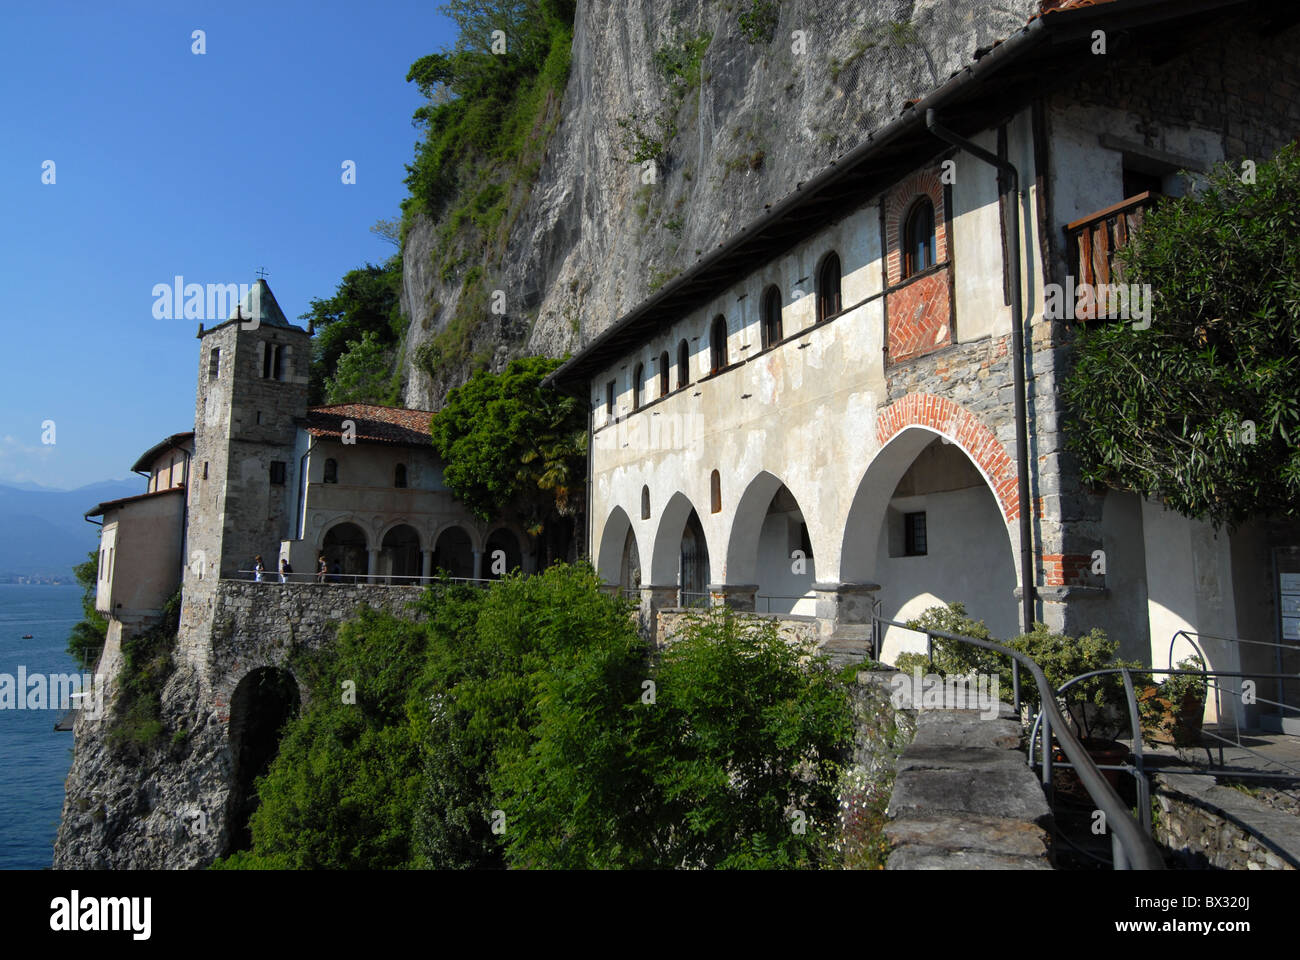 Cloister Santa Caterina del Sasso, Lago Maggiore, Italy Stock Photo